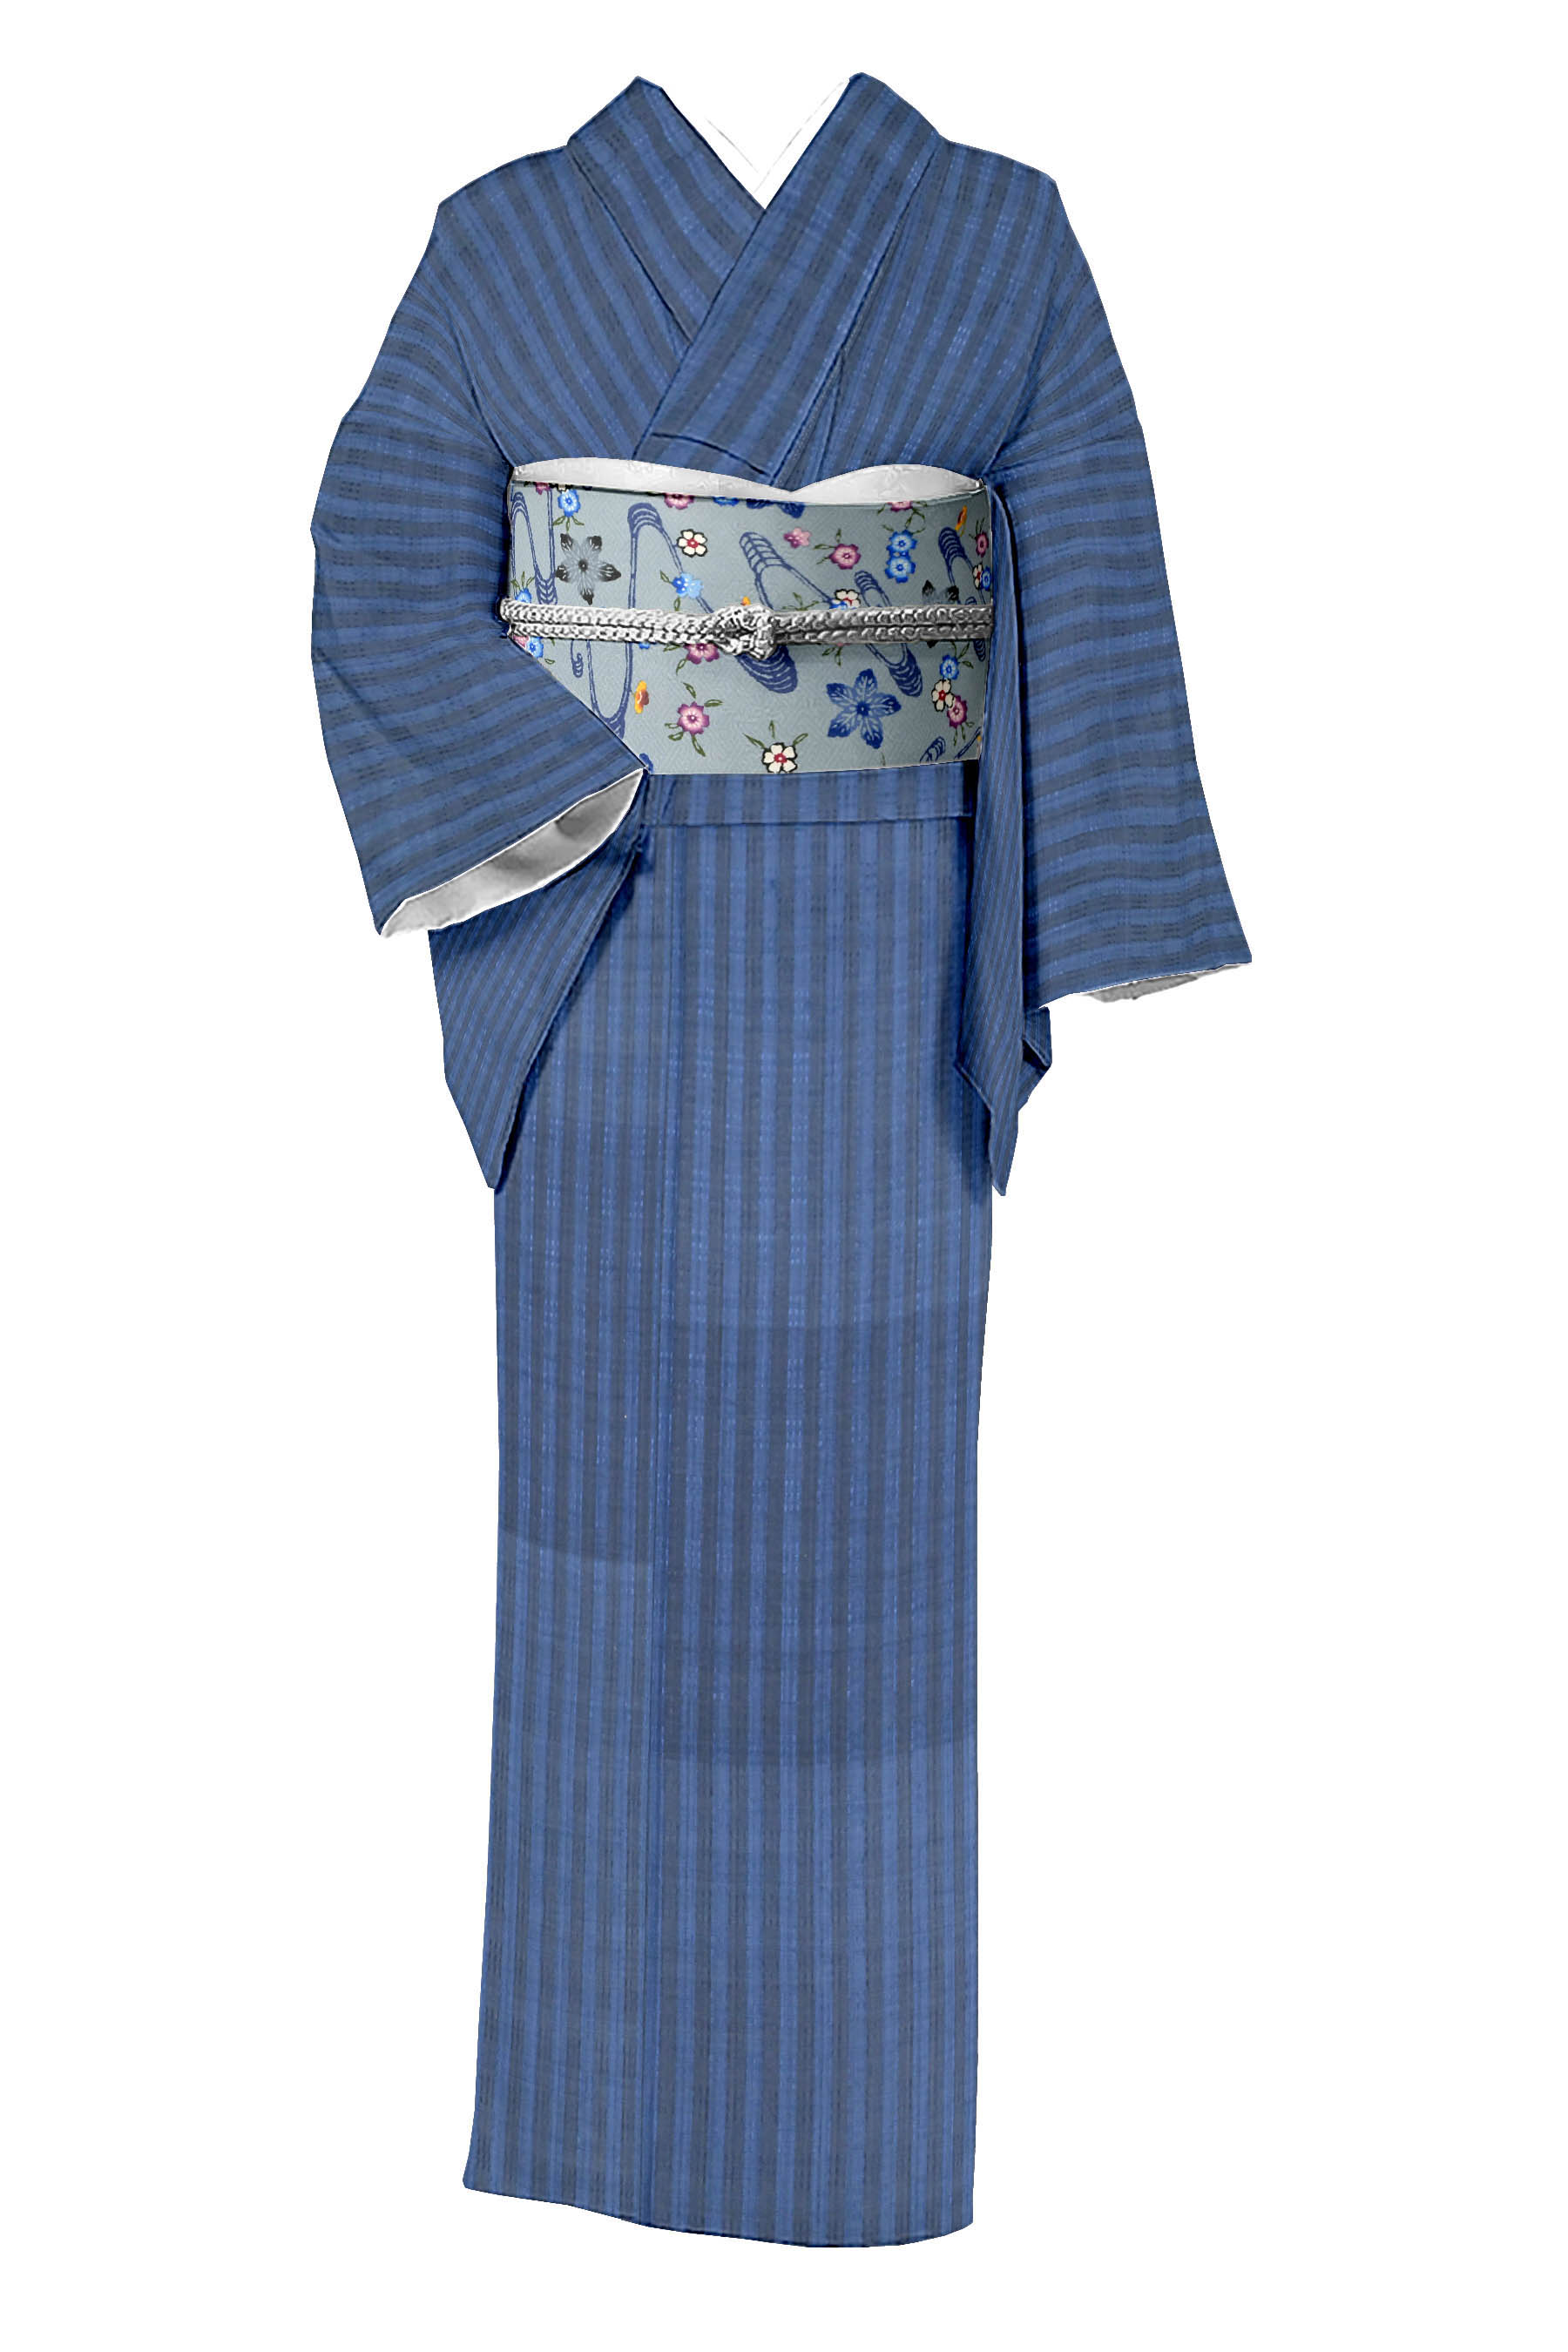 着物だいやす 526□八寸名古屋帯□琉球花織 浮織 菱格子横段文 濃藍色 